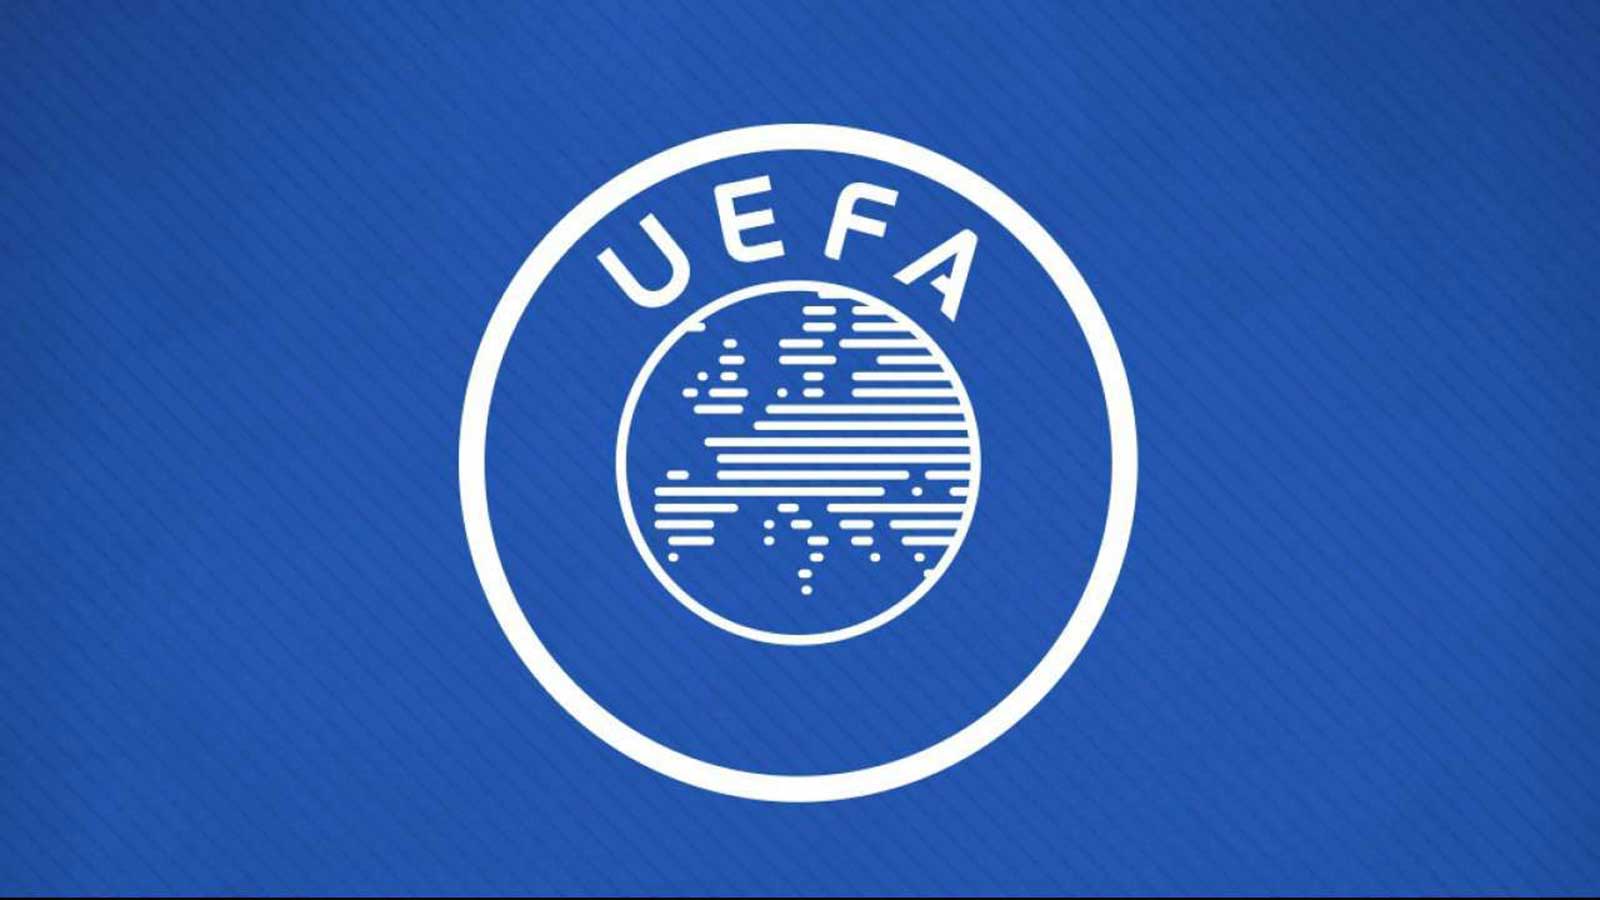 الاتحاد الأوروبي لكرة القدم (يويفا) يبدأ اليوم بيع تذاكر كأس الأمم الأوروبية (يورو 2024) في ألمانيا